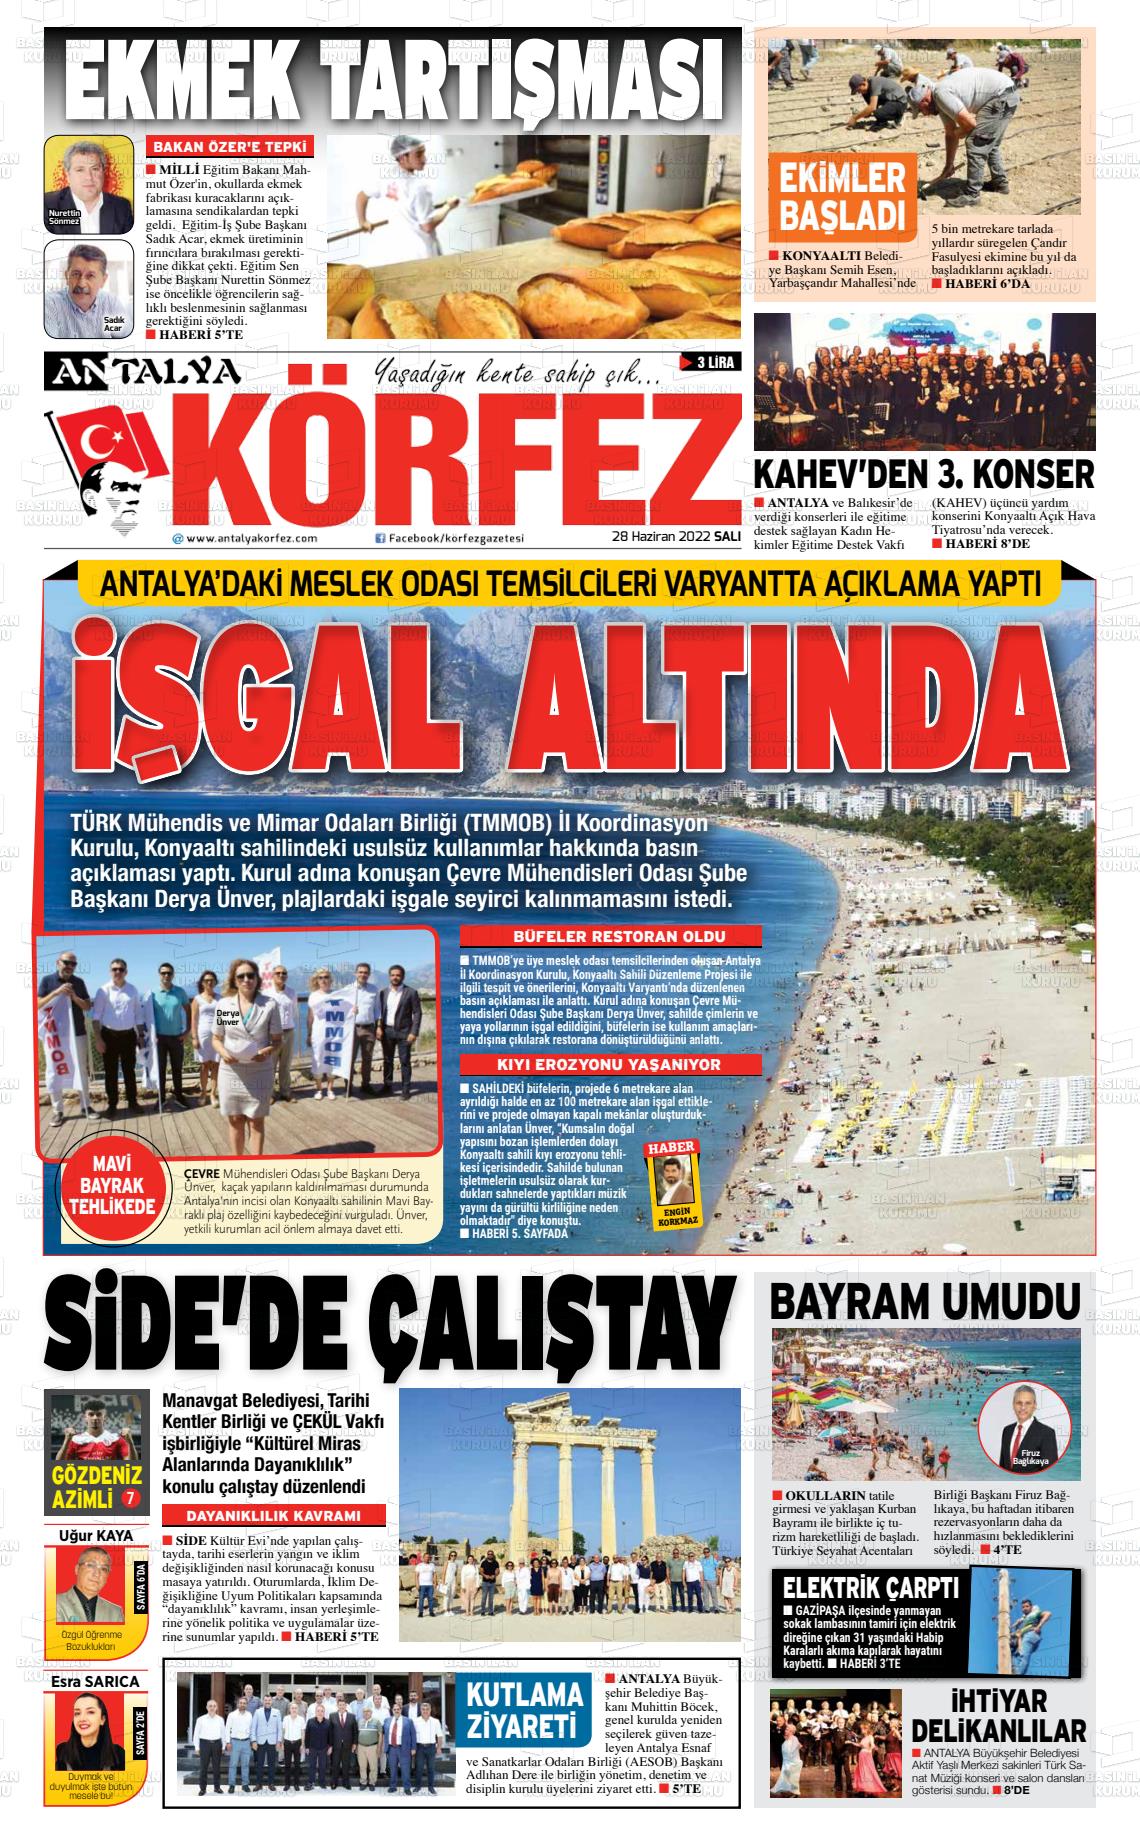 28 Haziran 2022 Antalya Körfez Gazete Manşeti